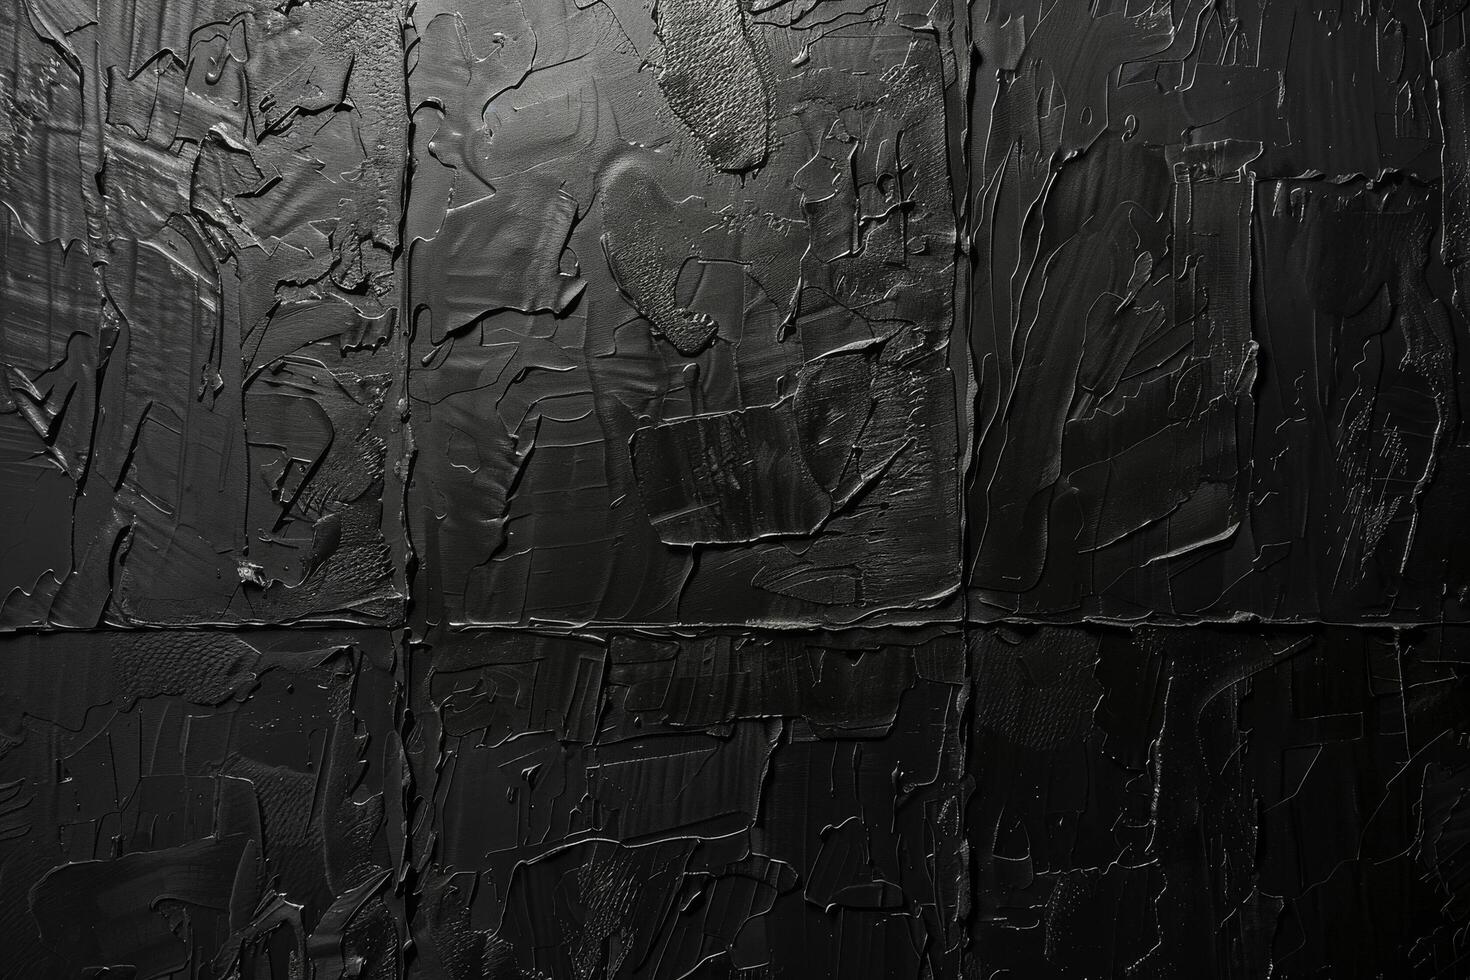 abstrakt svart texturerad yta foto